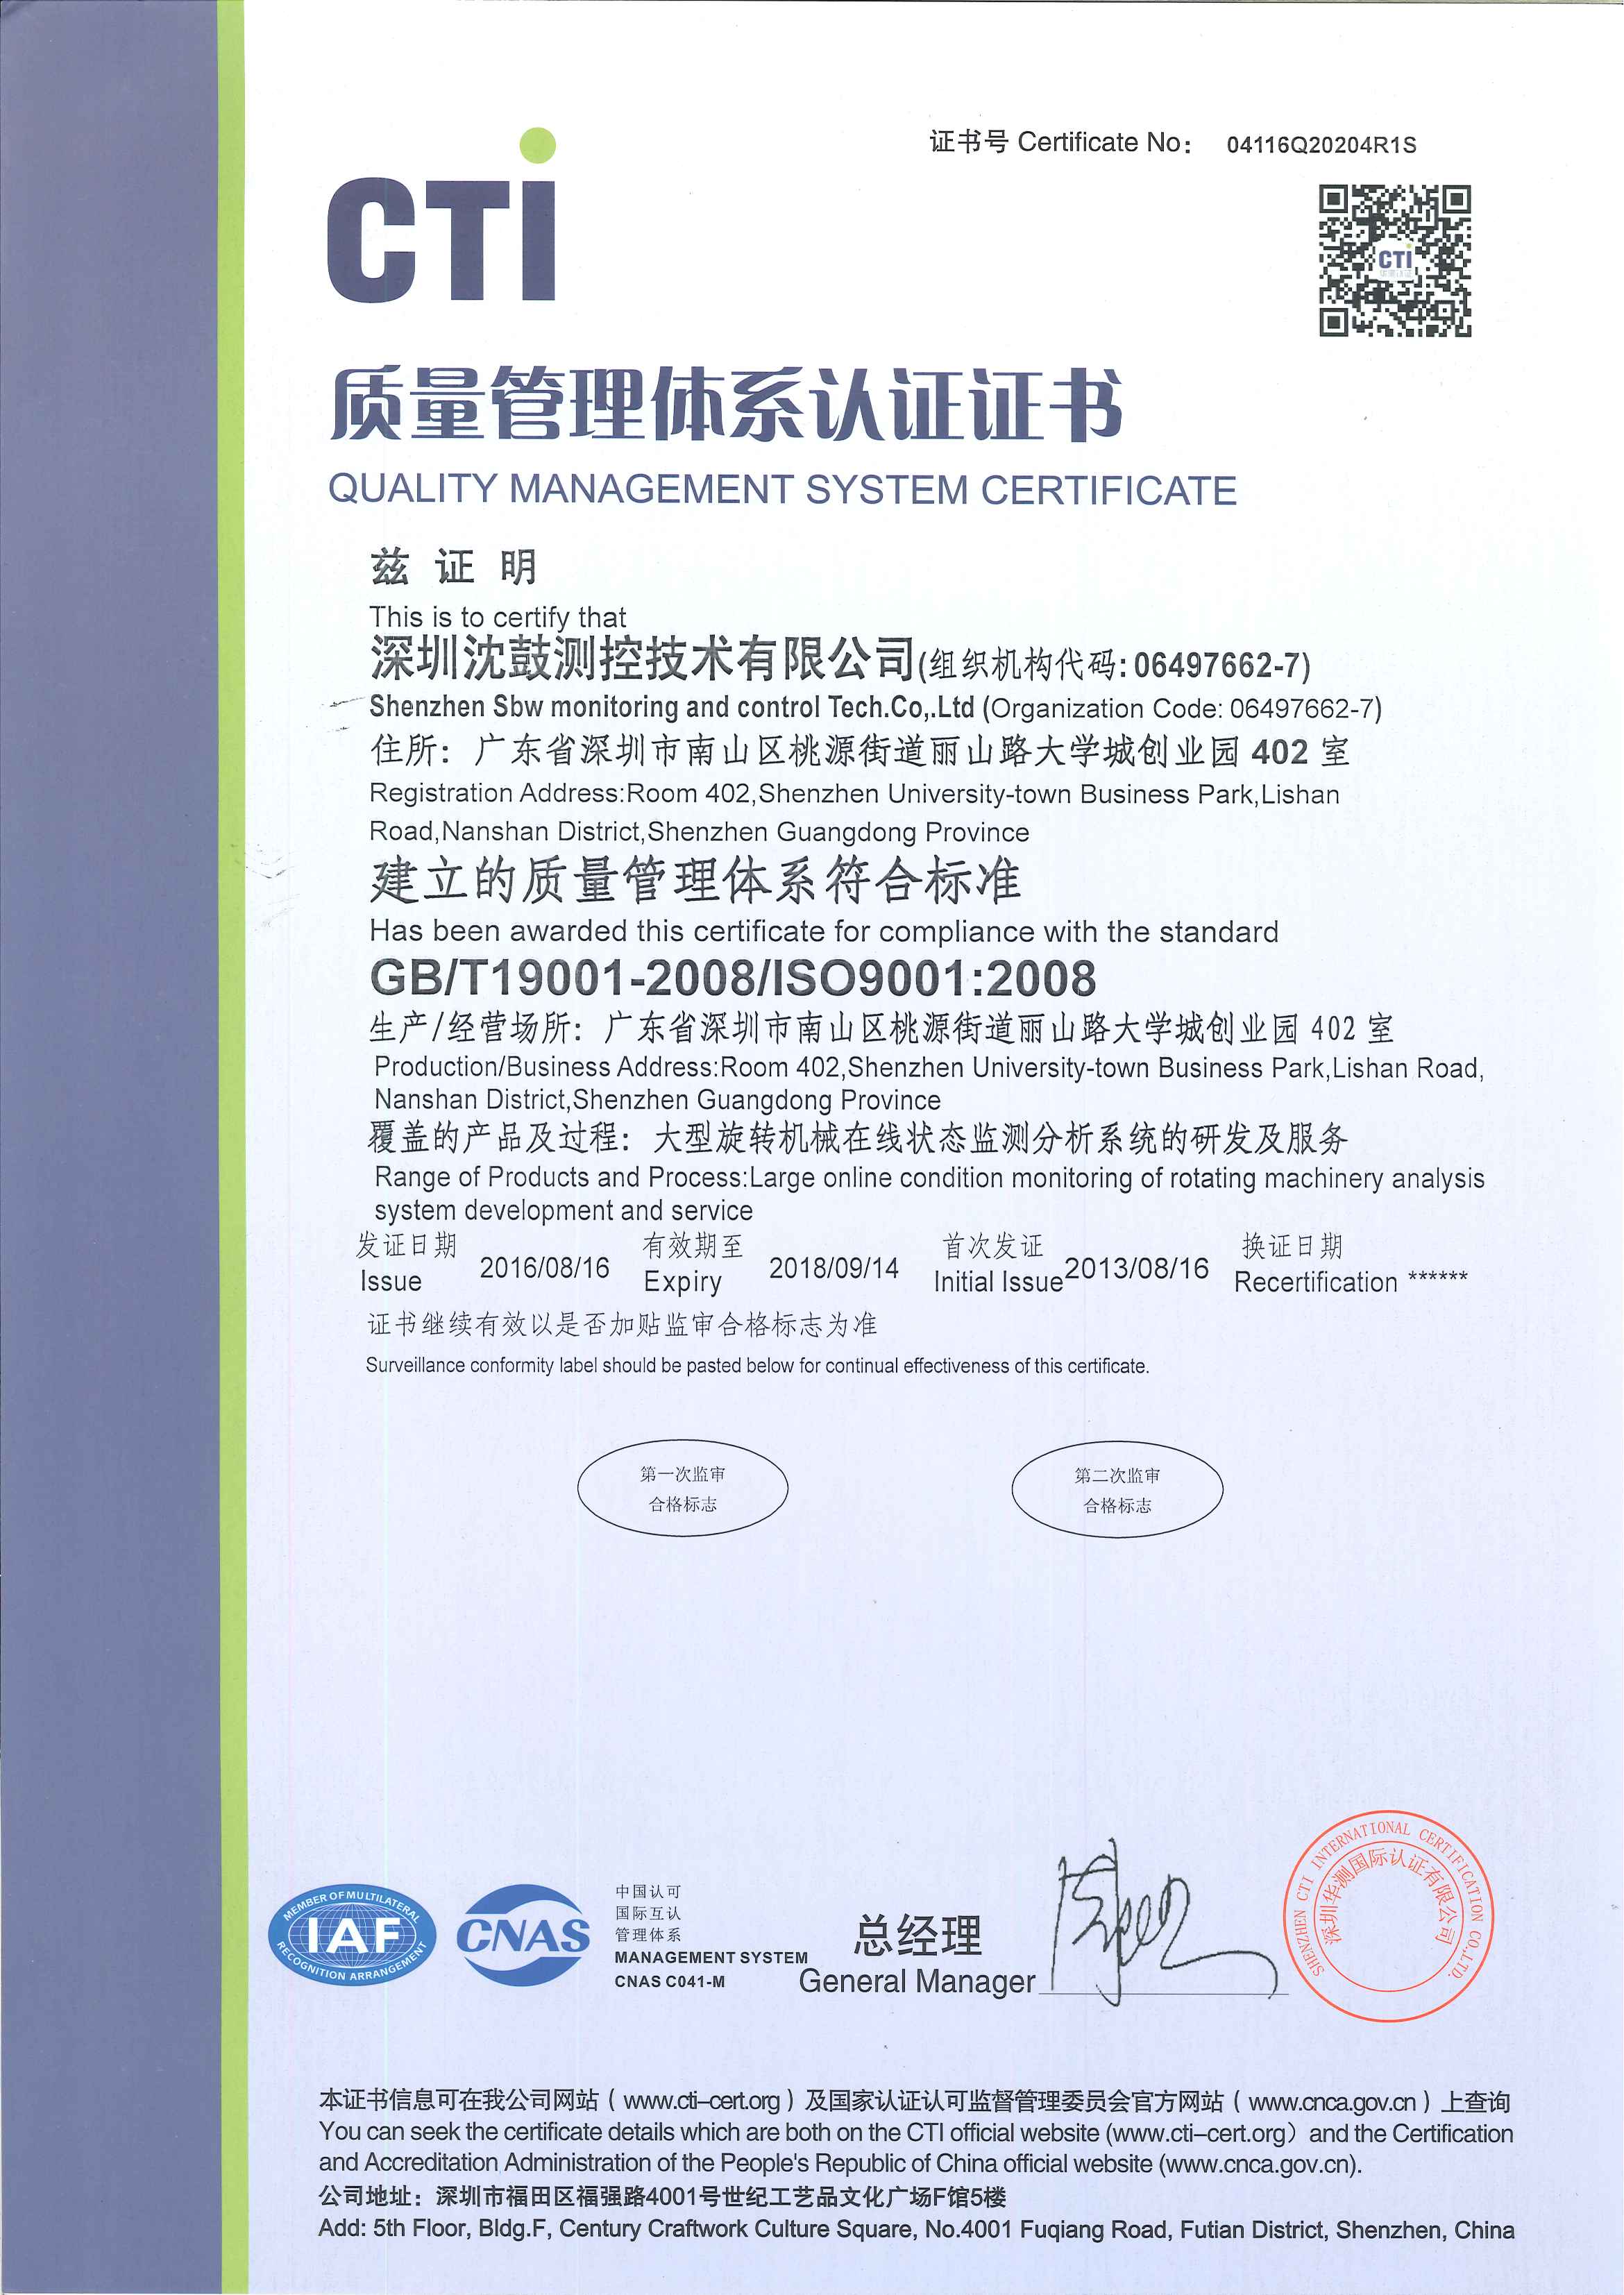 首次取得质量管理体系ISO9001认证证书